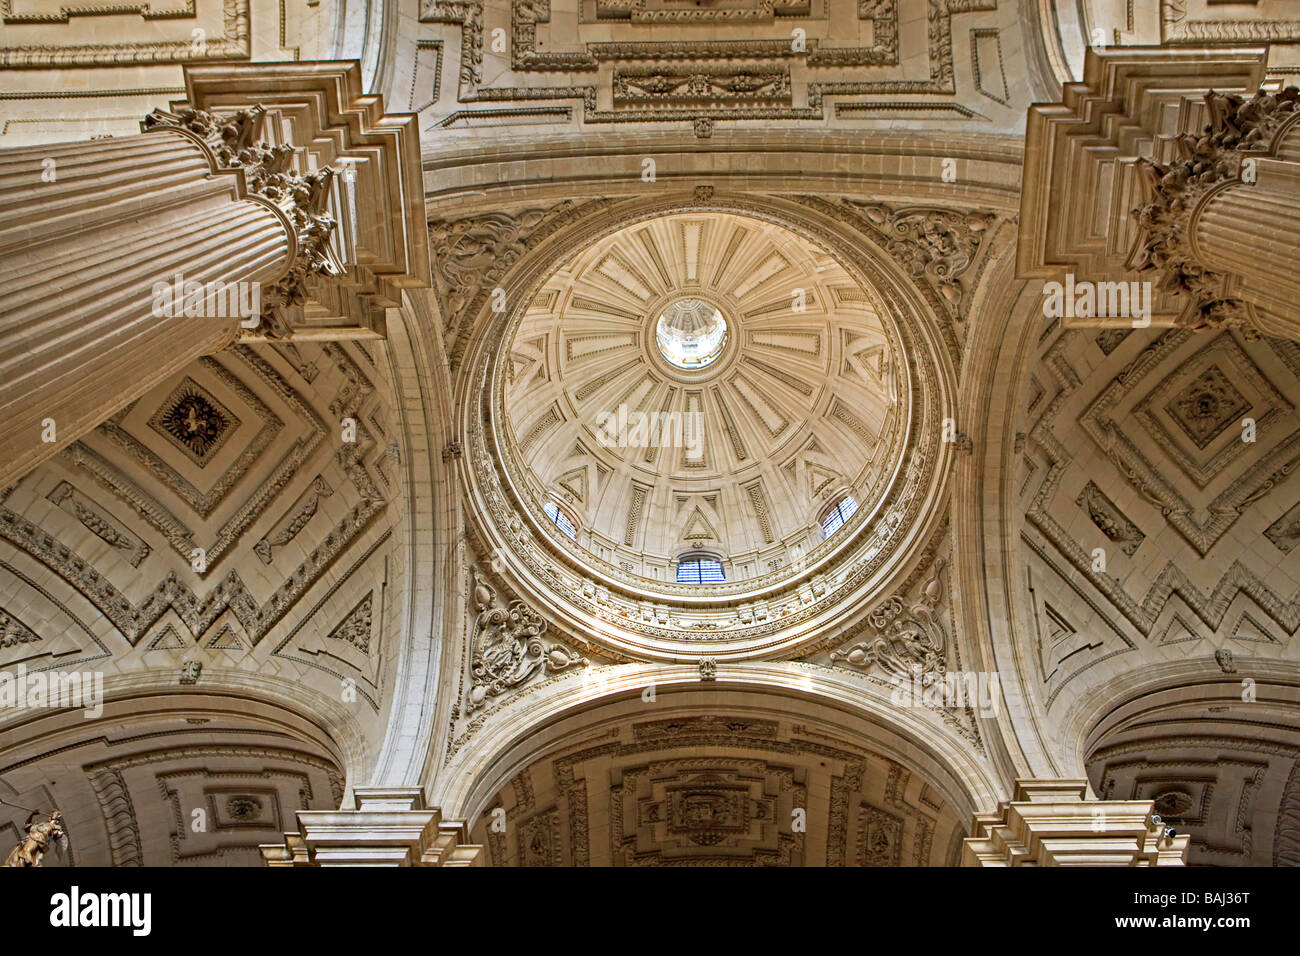 Innenraum der Kuppel der Kathedrale von Jaen Sagrario Bezirk Stadt von Jaen Provinz Jaen Andalusien Andalusien Spanien Europas Stockfoto